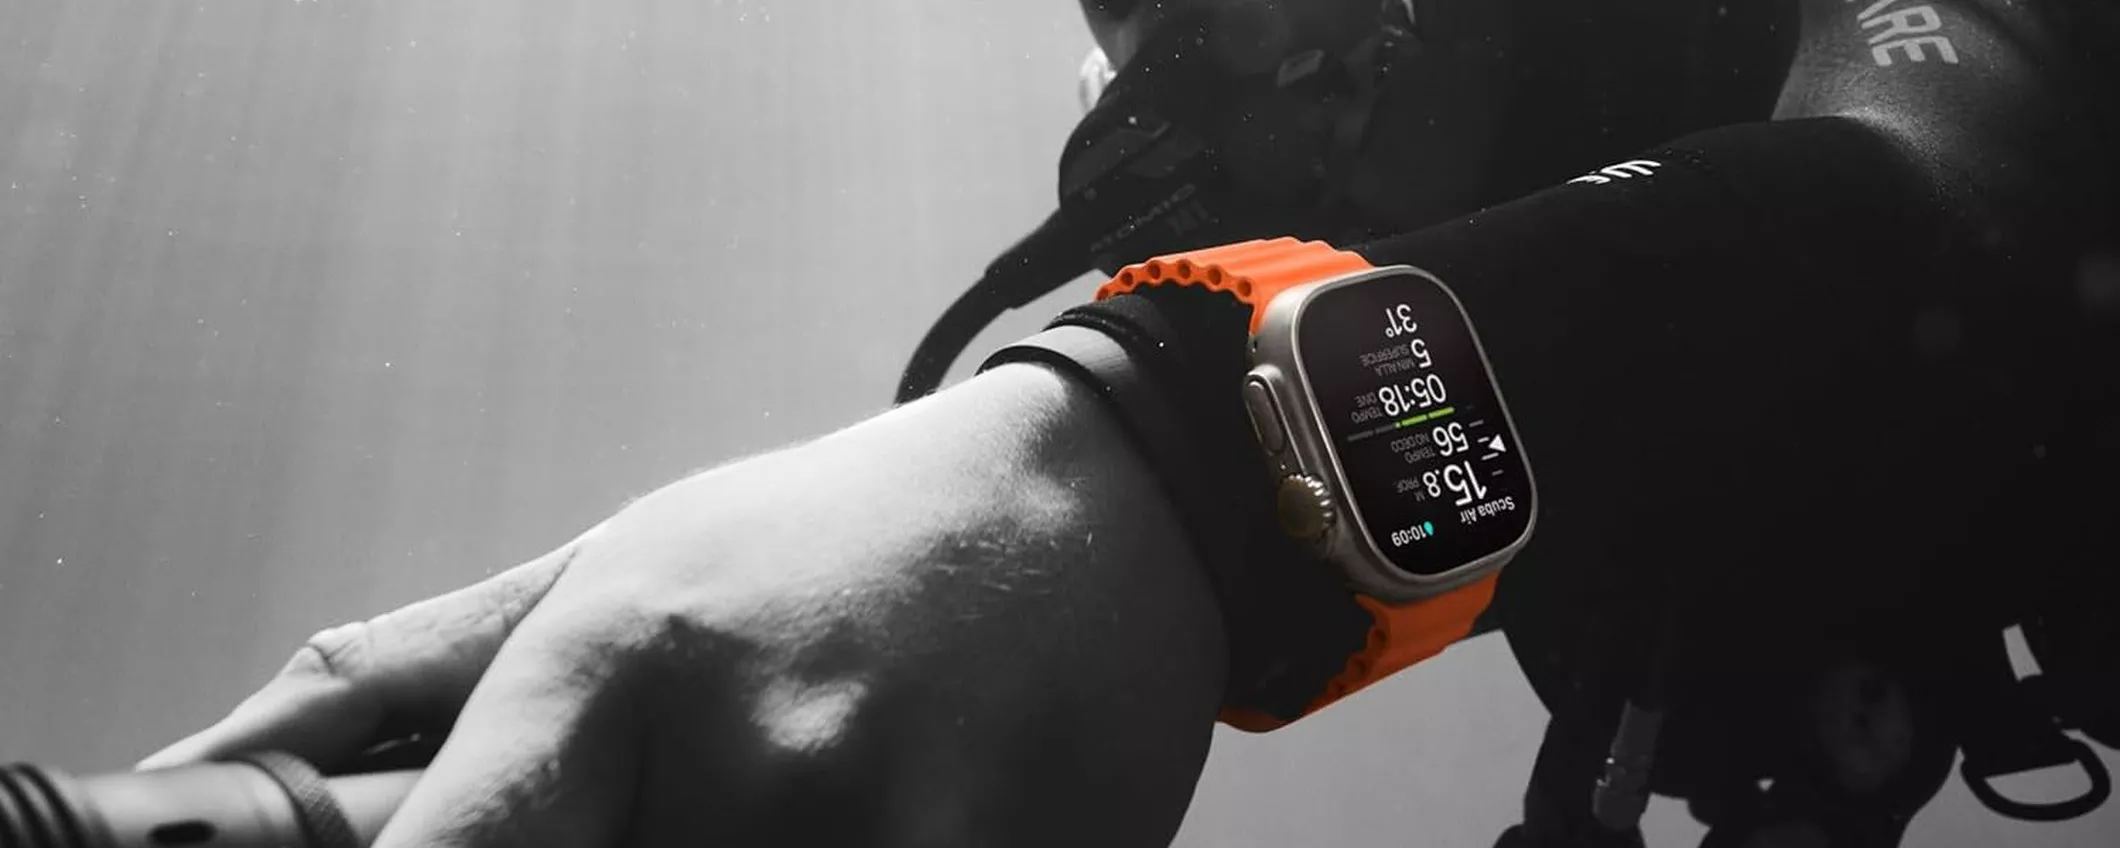 Apple Watch Ultra 2, prestazioni migliorate, ecologico, prenotalo ORA su Amazon